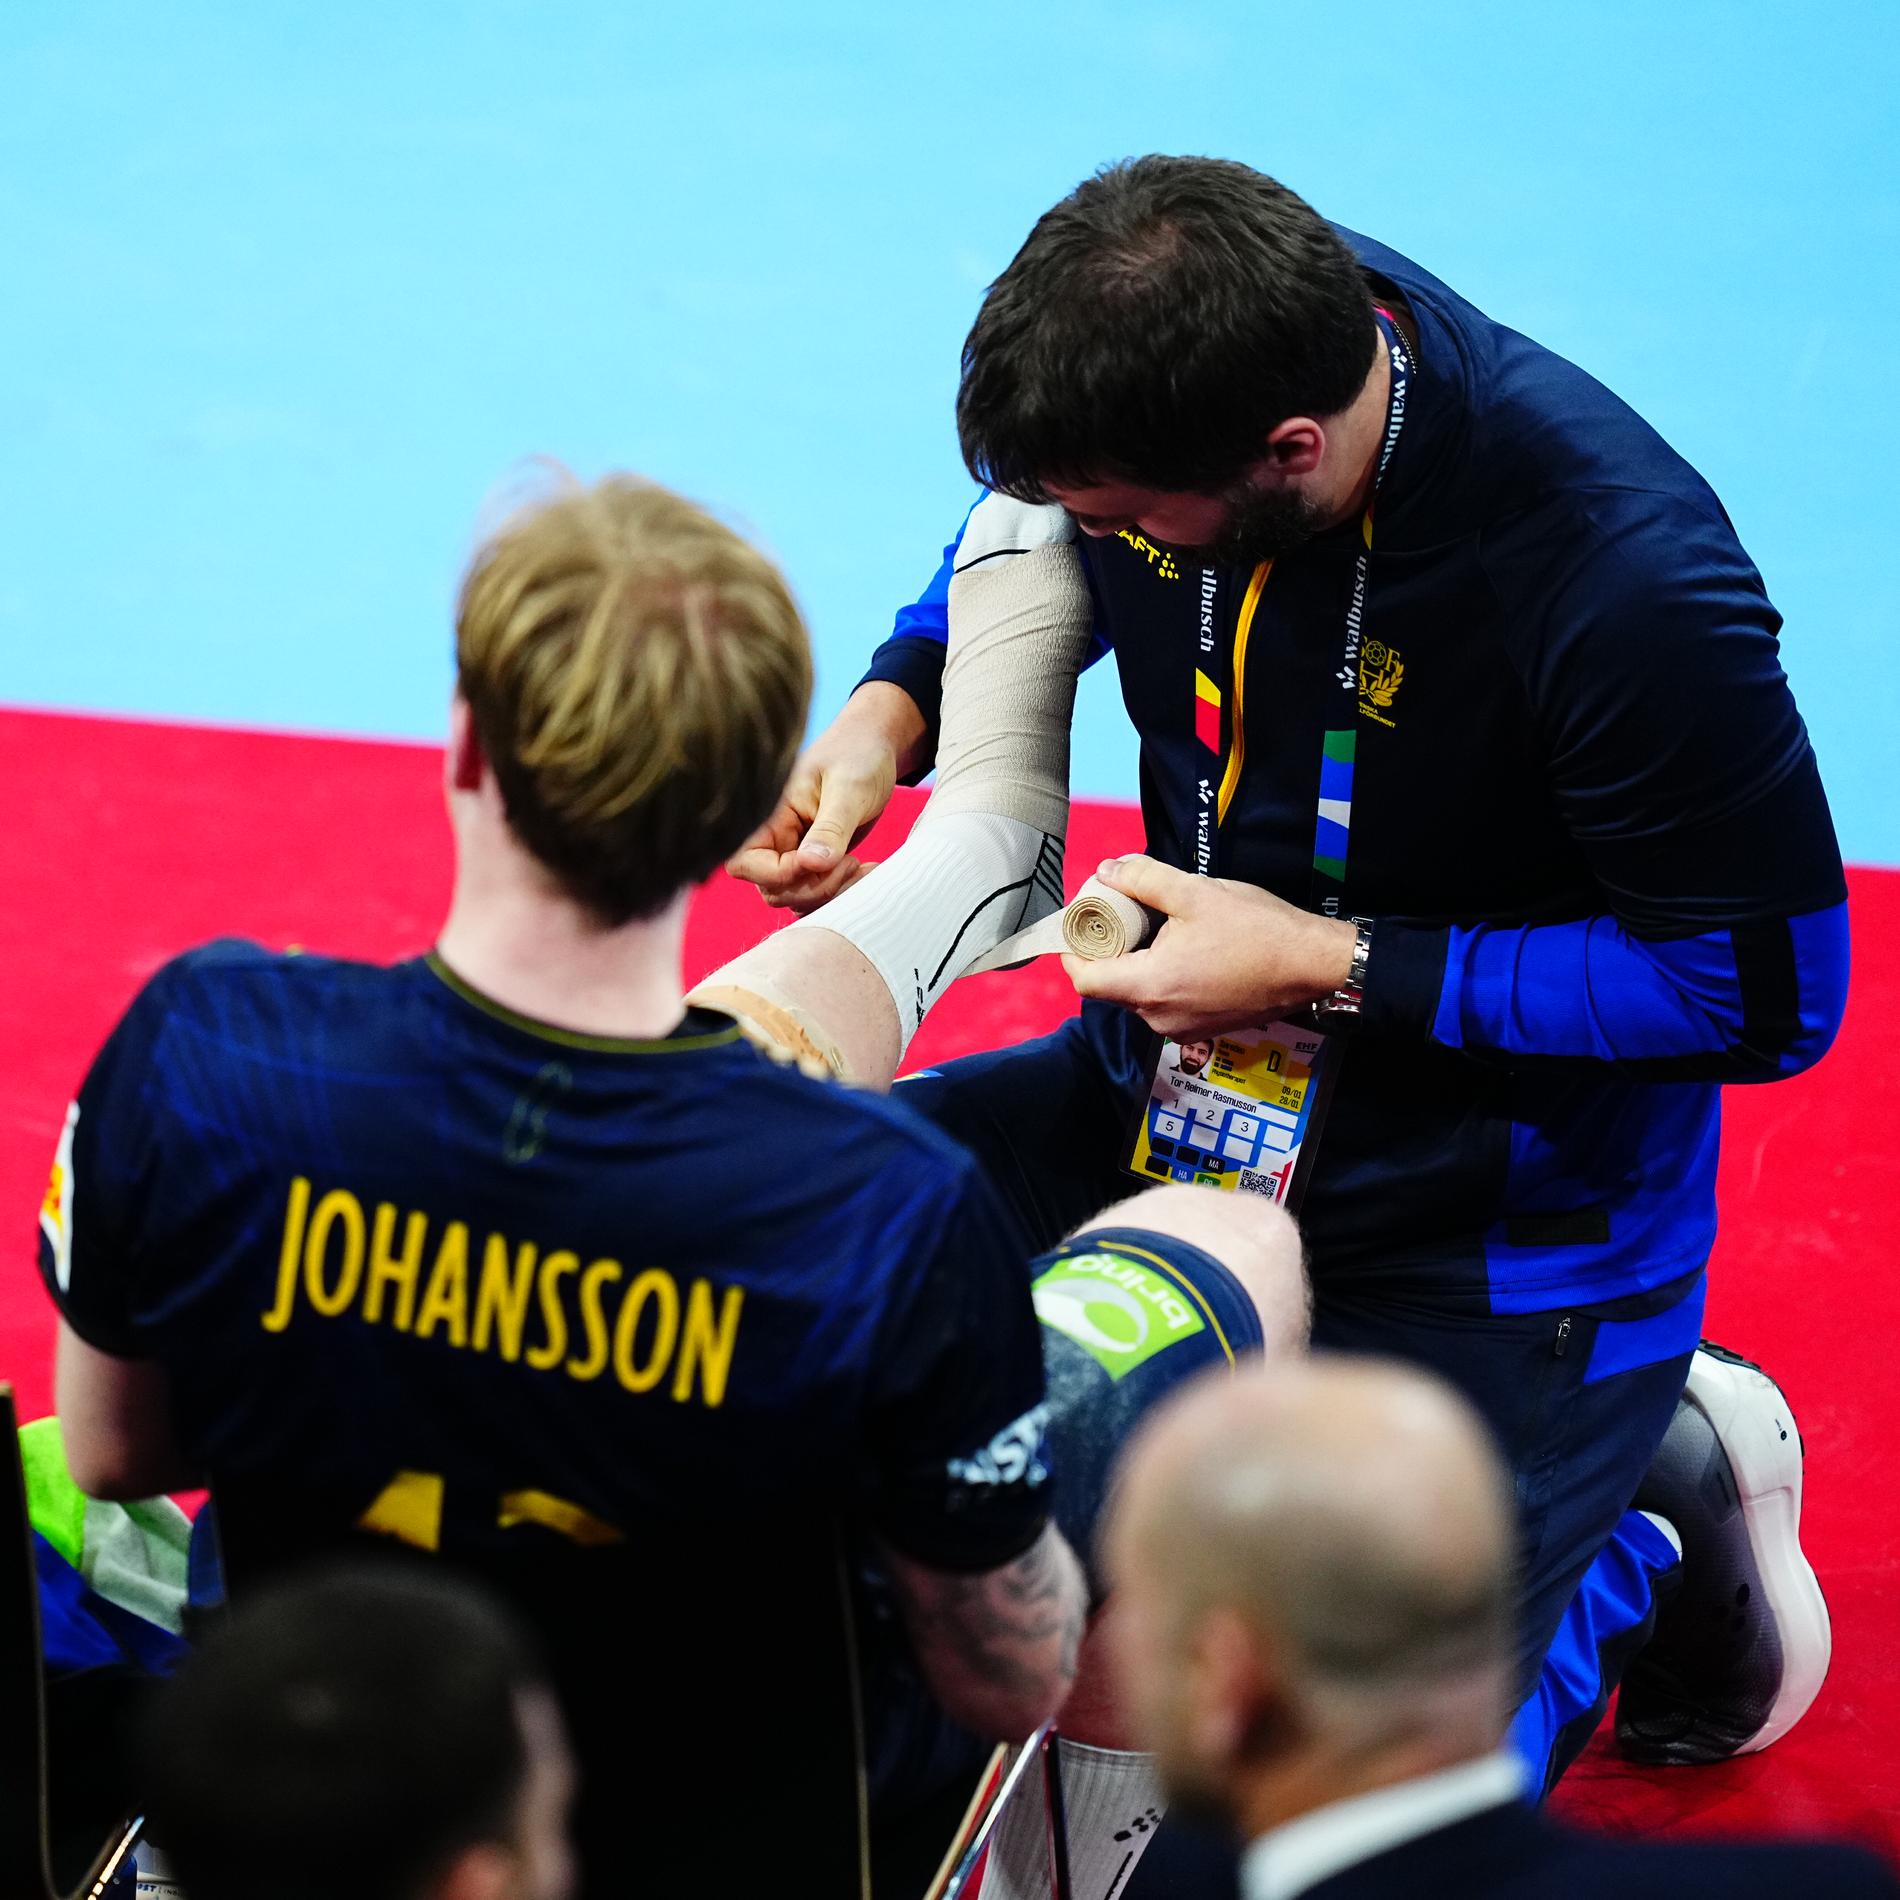 Eric Johansson vrickade foten: ”Den är okej”, säger han.